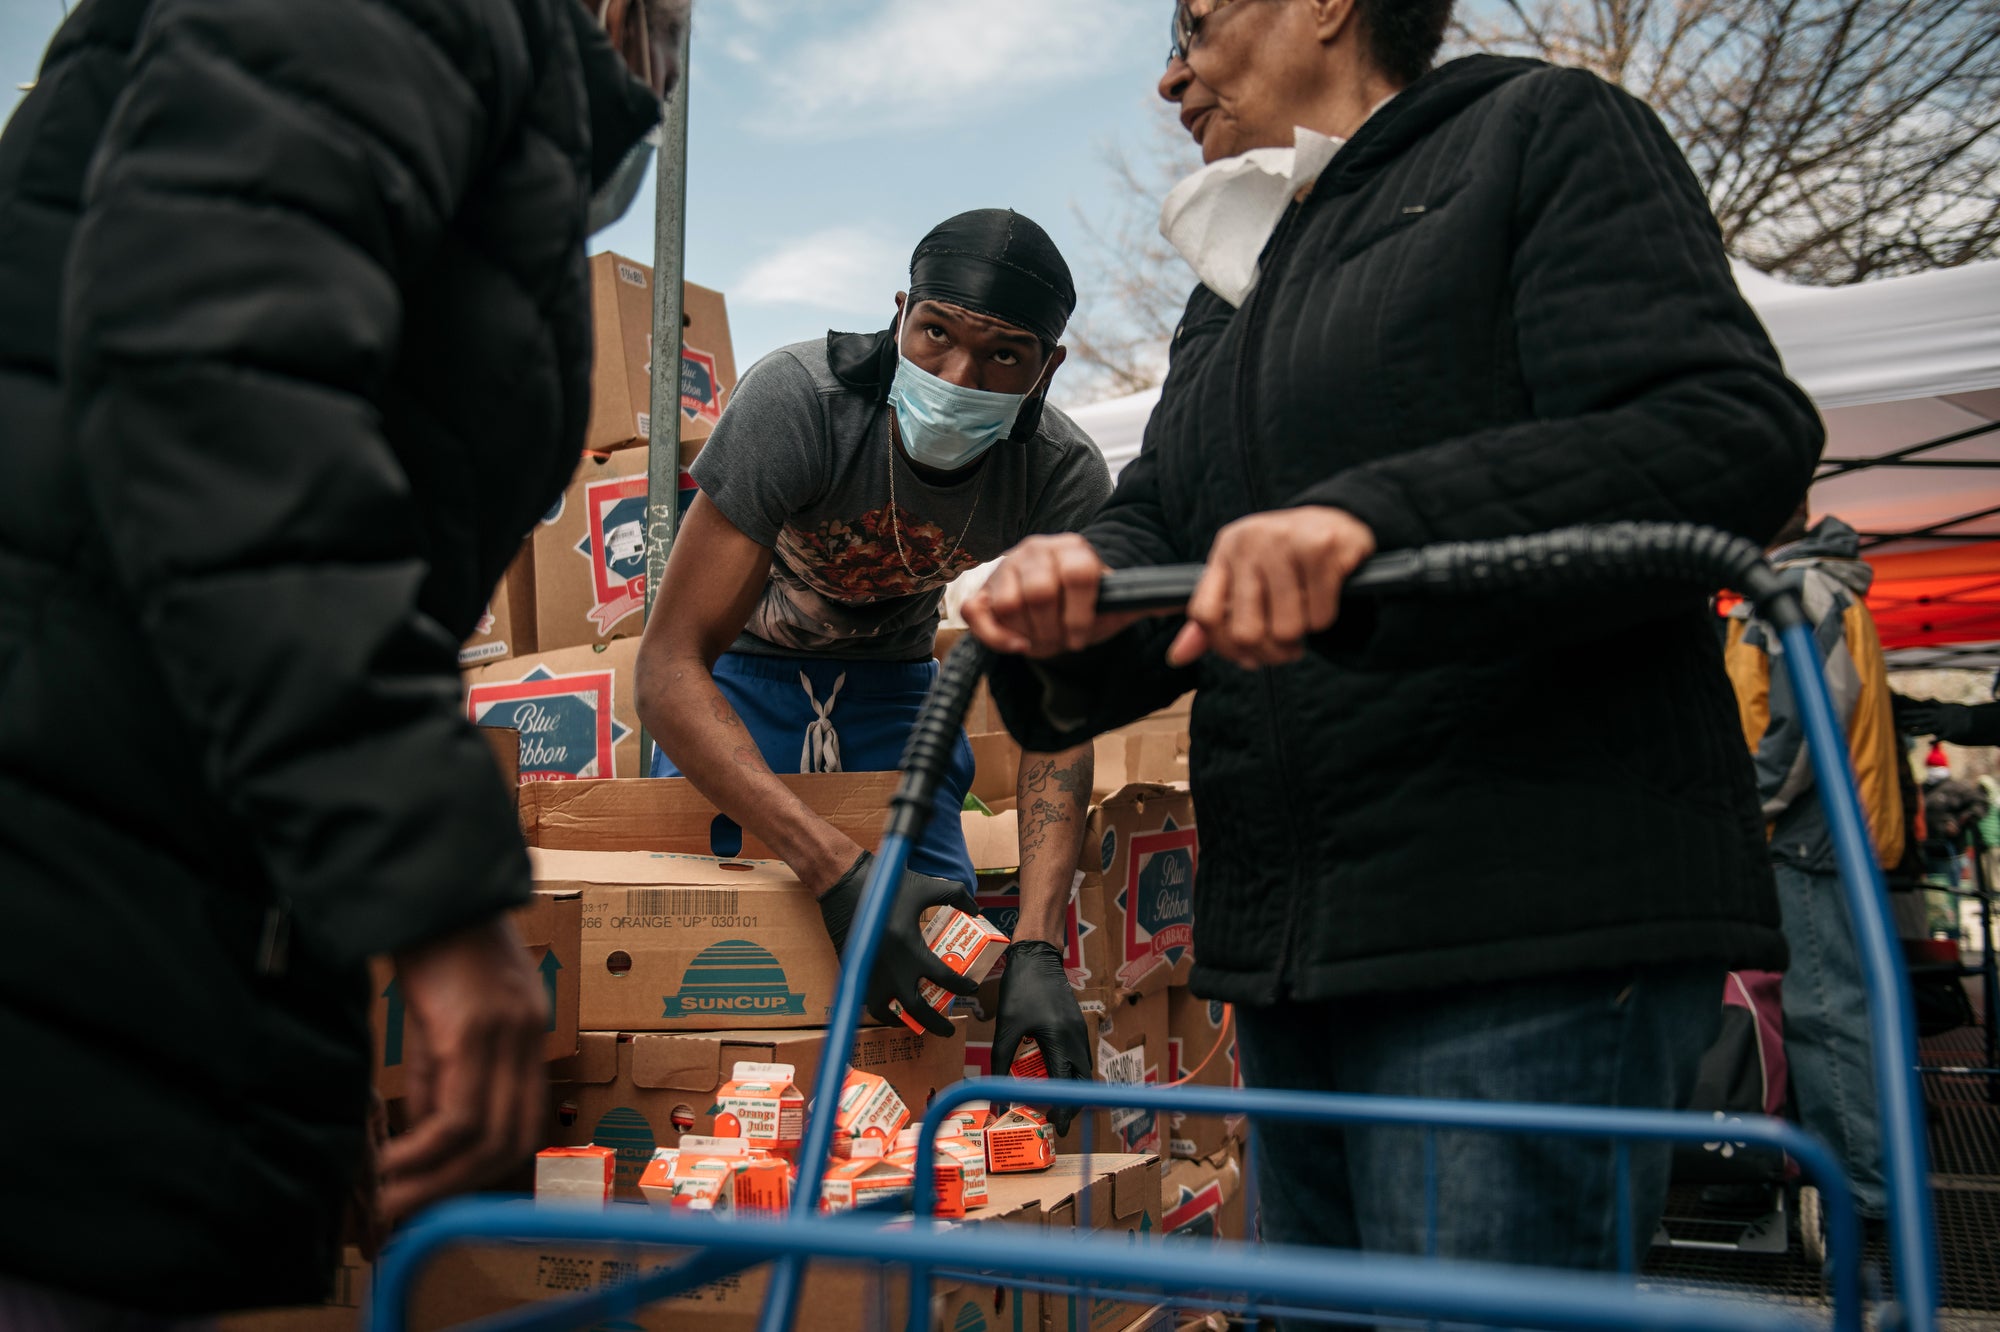 Un trabajador distribuye jugo de naranja en un estante de alimentos en Brooklyn el 14 de abril de 2020. La crisis del coronavirus está aumentando la inseguridad alimentaria.